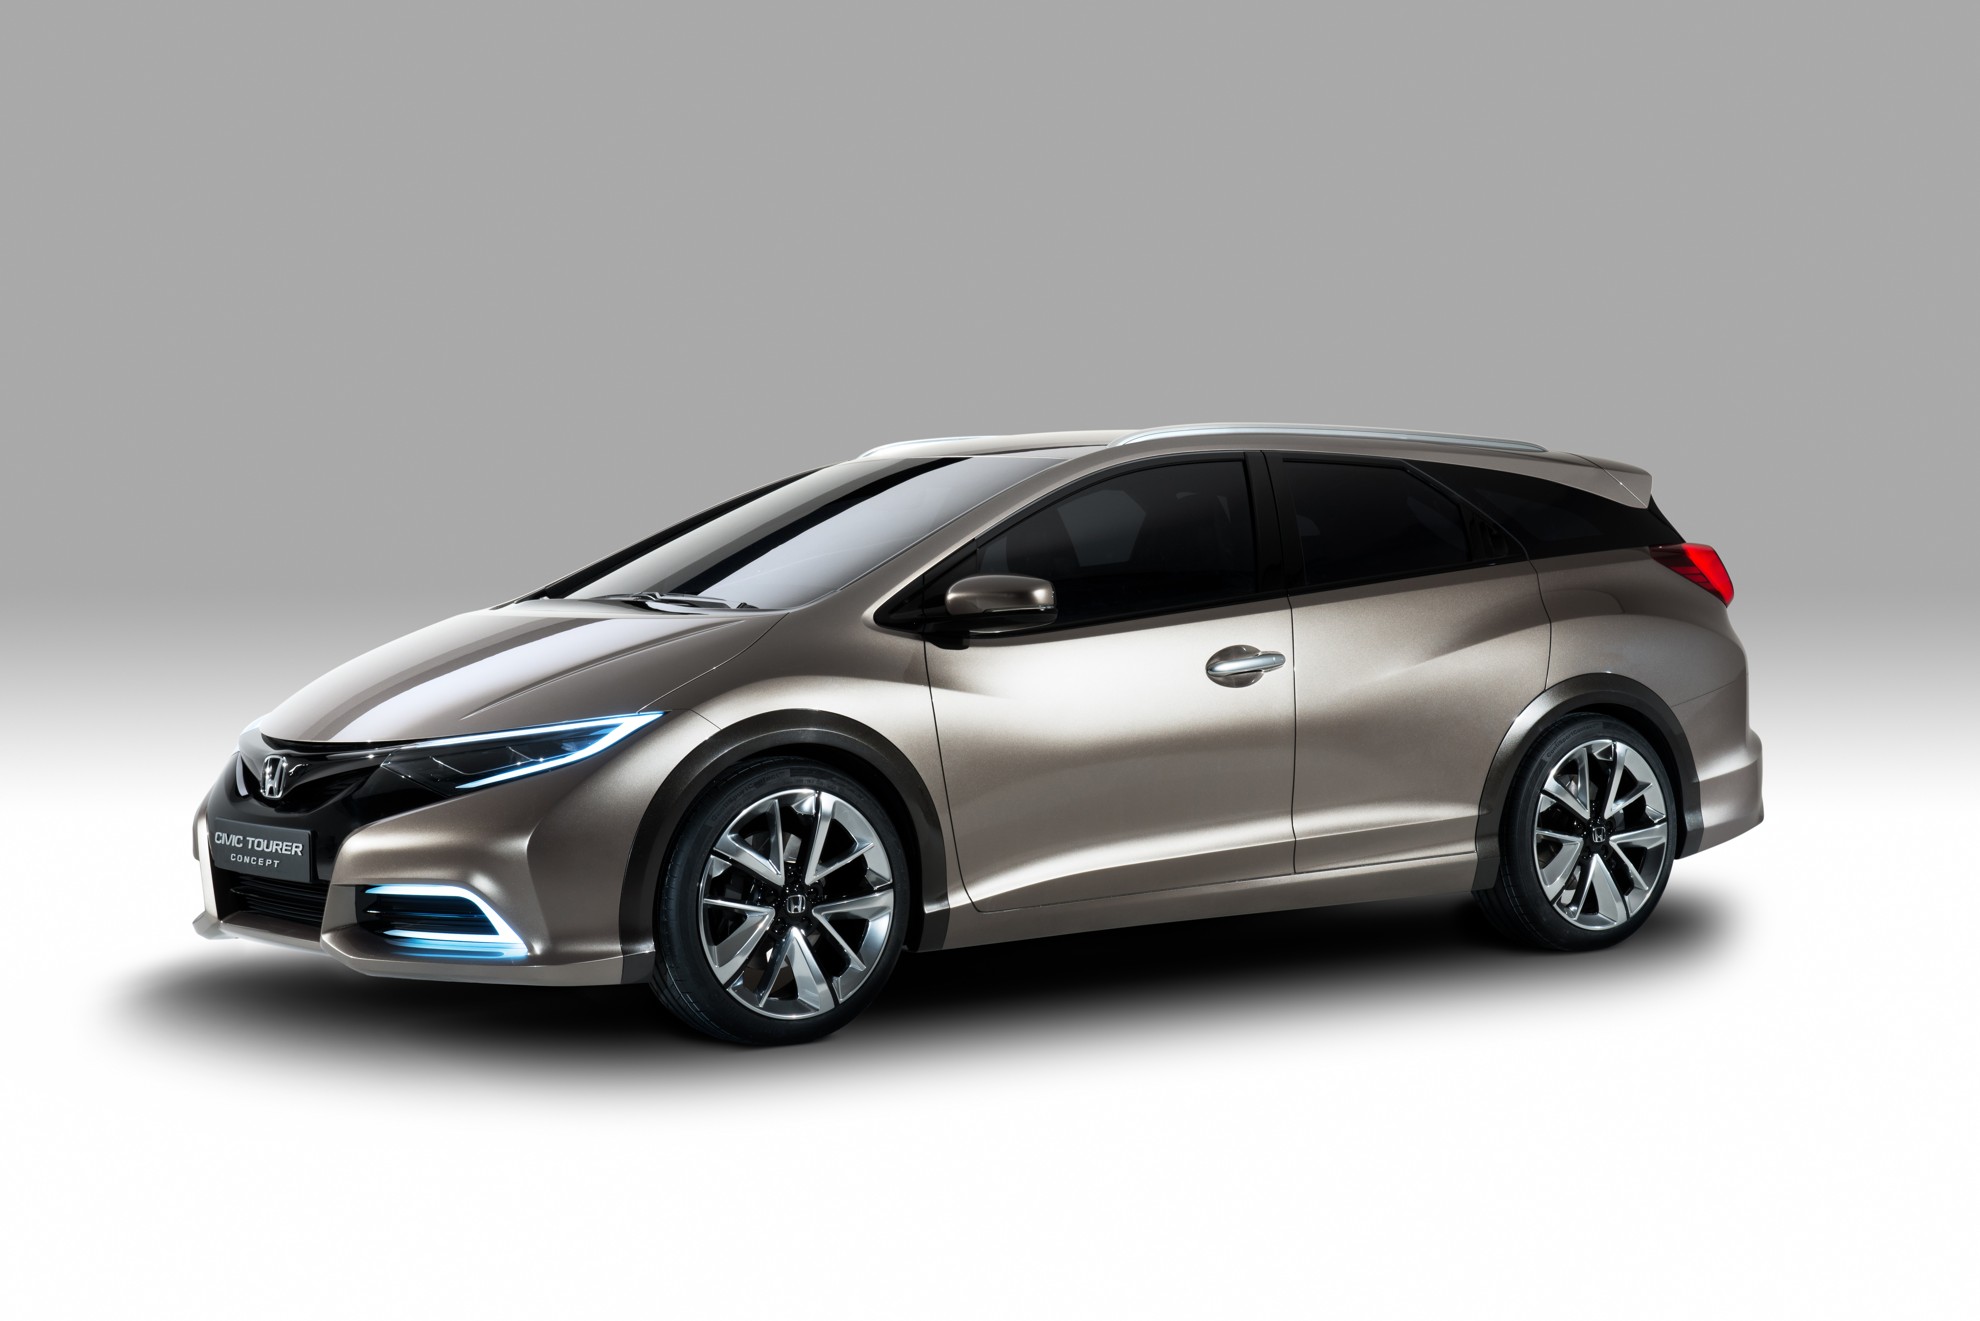 2013 Geneva Auto Show – Honda Civic Tourer Concept